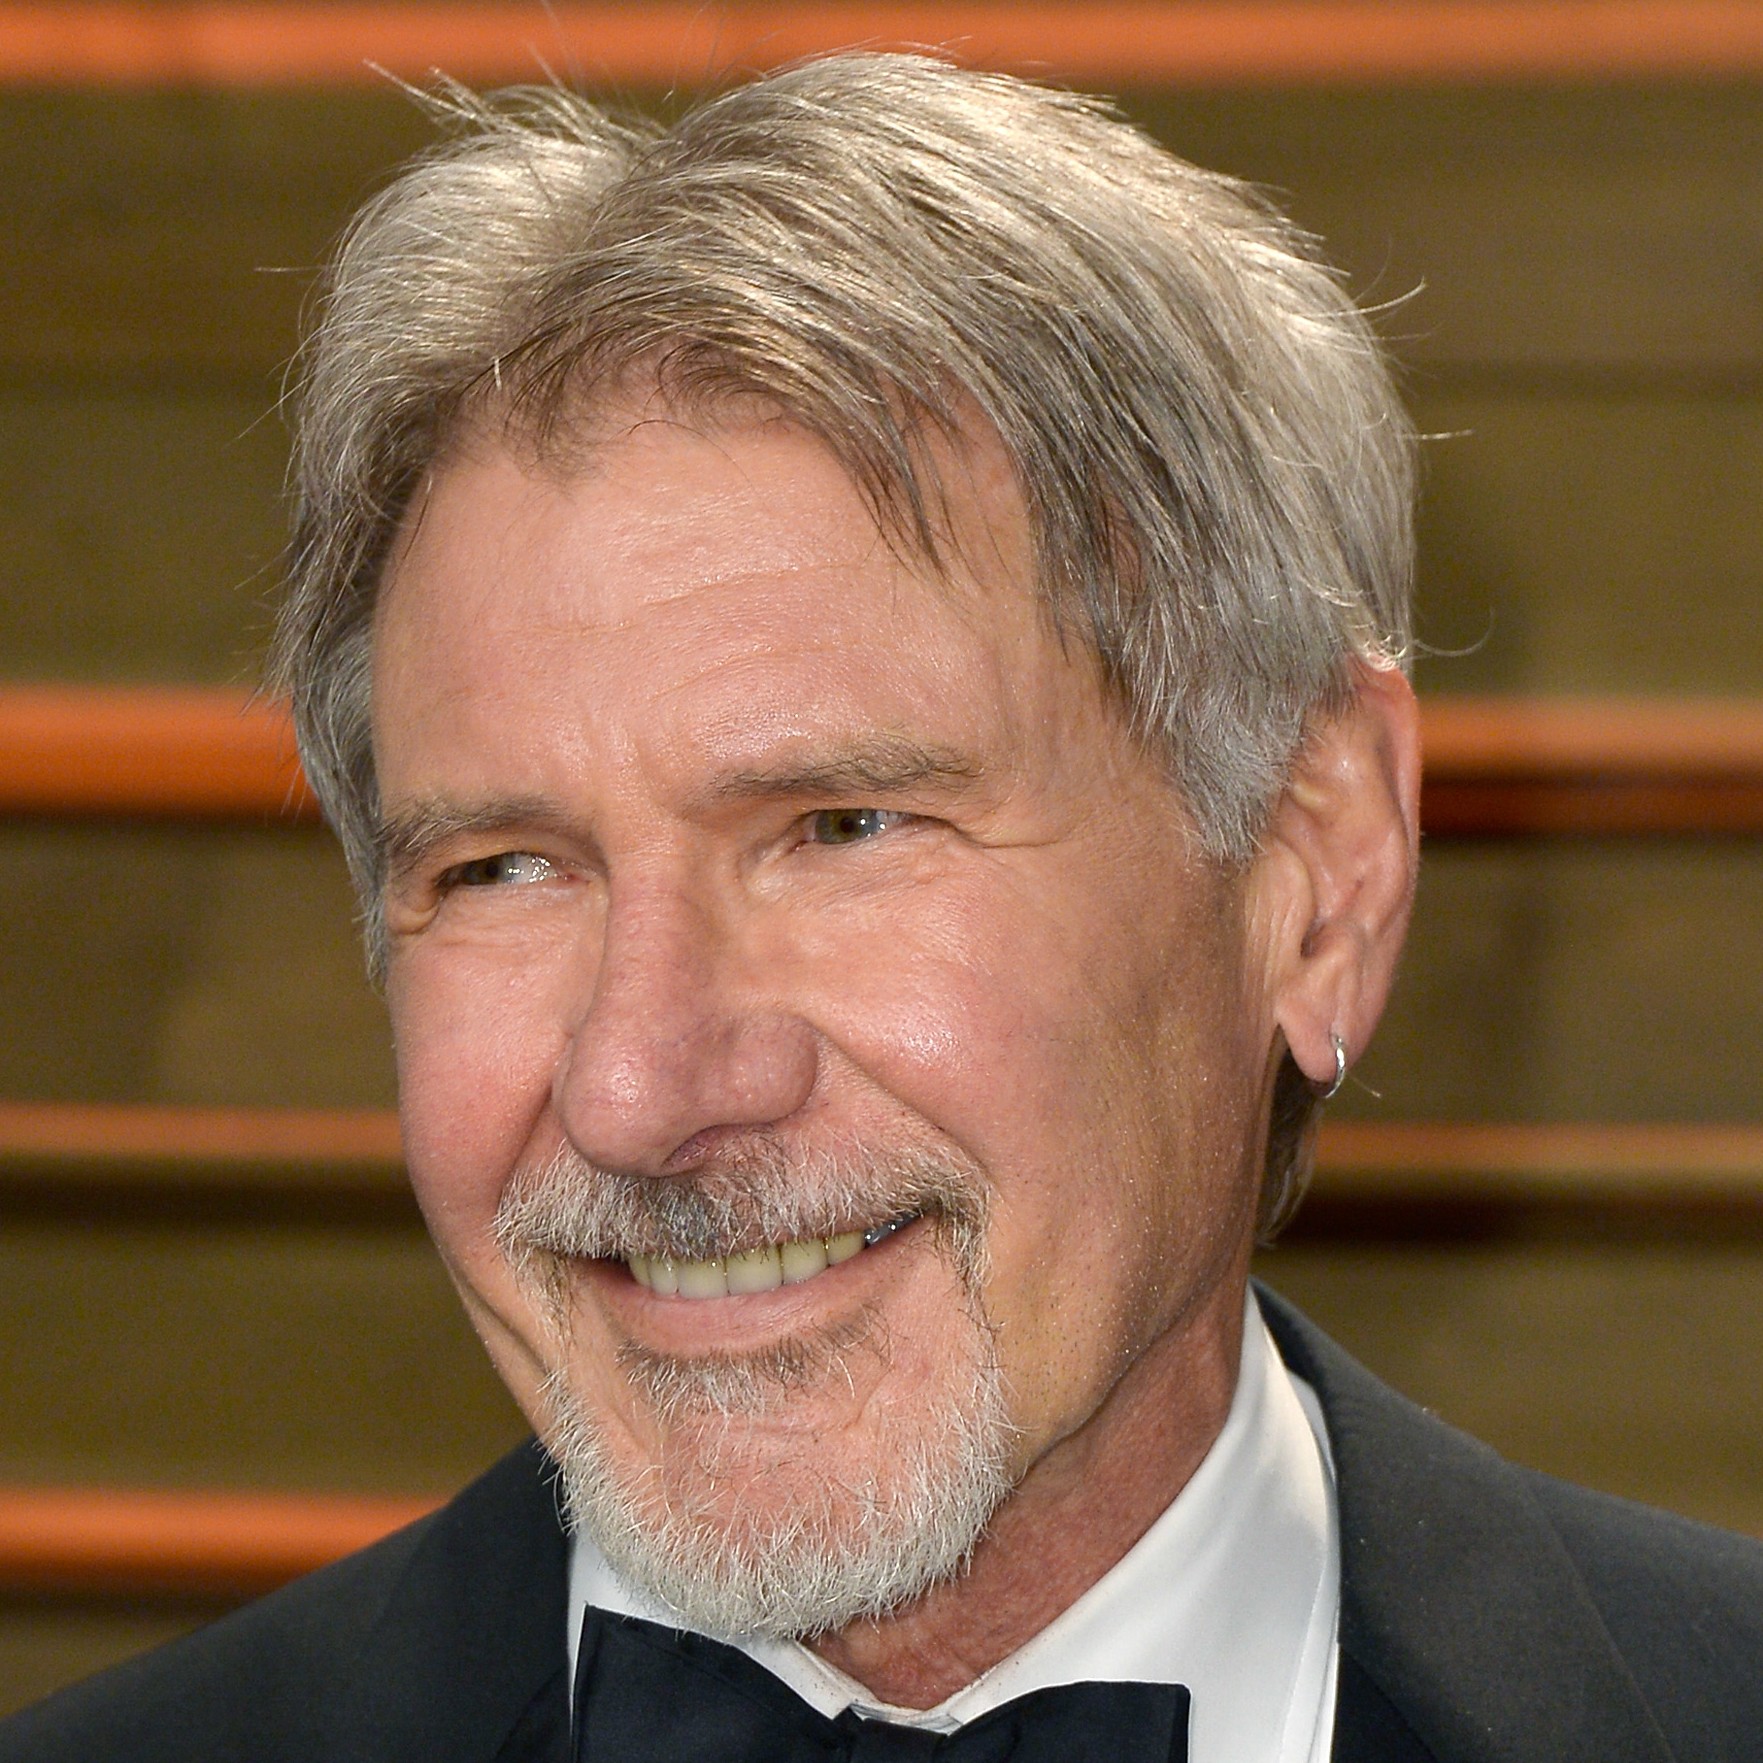 Harrison Ford chegou aos 71 anos eternizado por protagonizar a saga de Indiana Jones. Ainda assim, só foi indicado a um Oscar até hoje. E perdeu. (Foto: Getty Images)